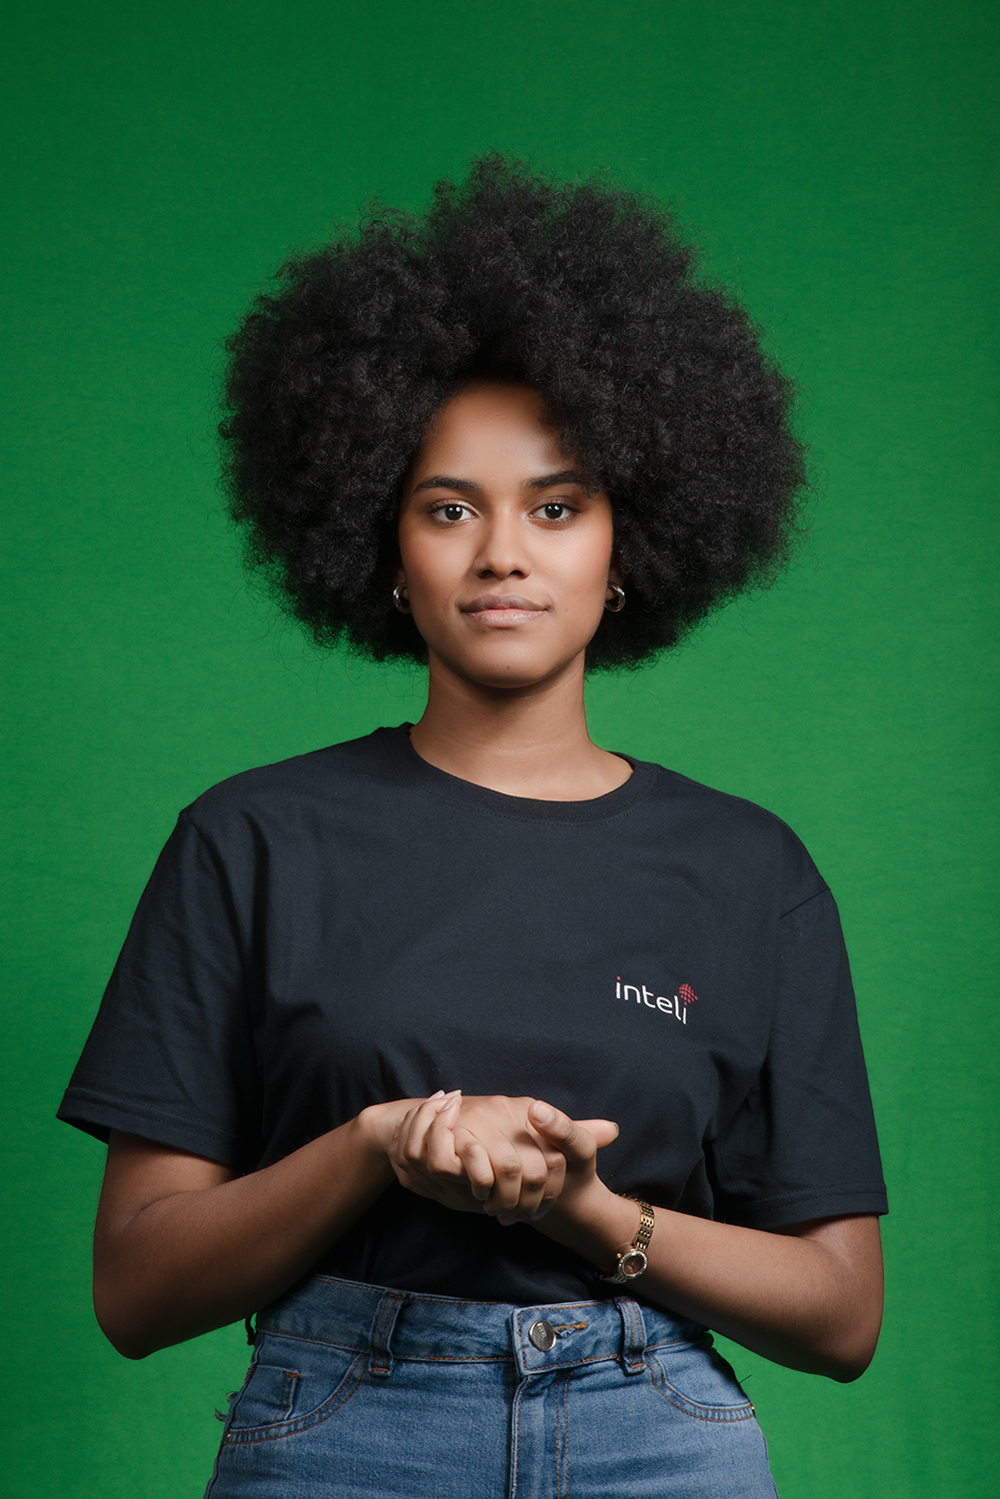 SAIU DA MODA - Com espírito empreendedor, Keylla, 19, trocou a ideia de ser estilista por uma bolsa integral em sistemas de informação no Inteli